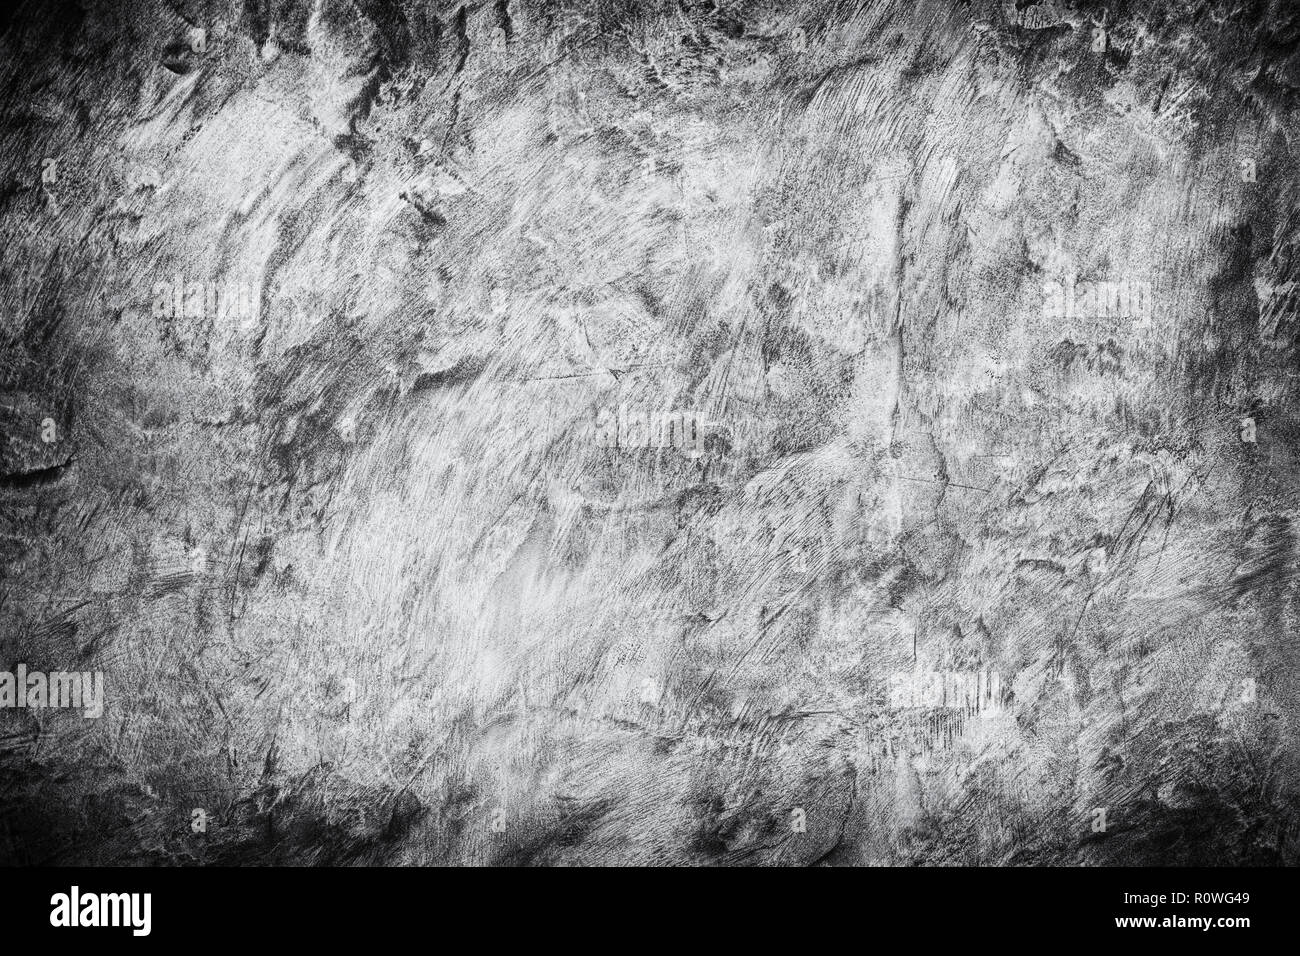 Abstrakte Dunkelgraue Wand Beton Texturen Hintergrund rauh mit vignette Hohe Auflösung Hintergrund für Design blackdrop oder Overlay Gips Farbe Stockfoto